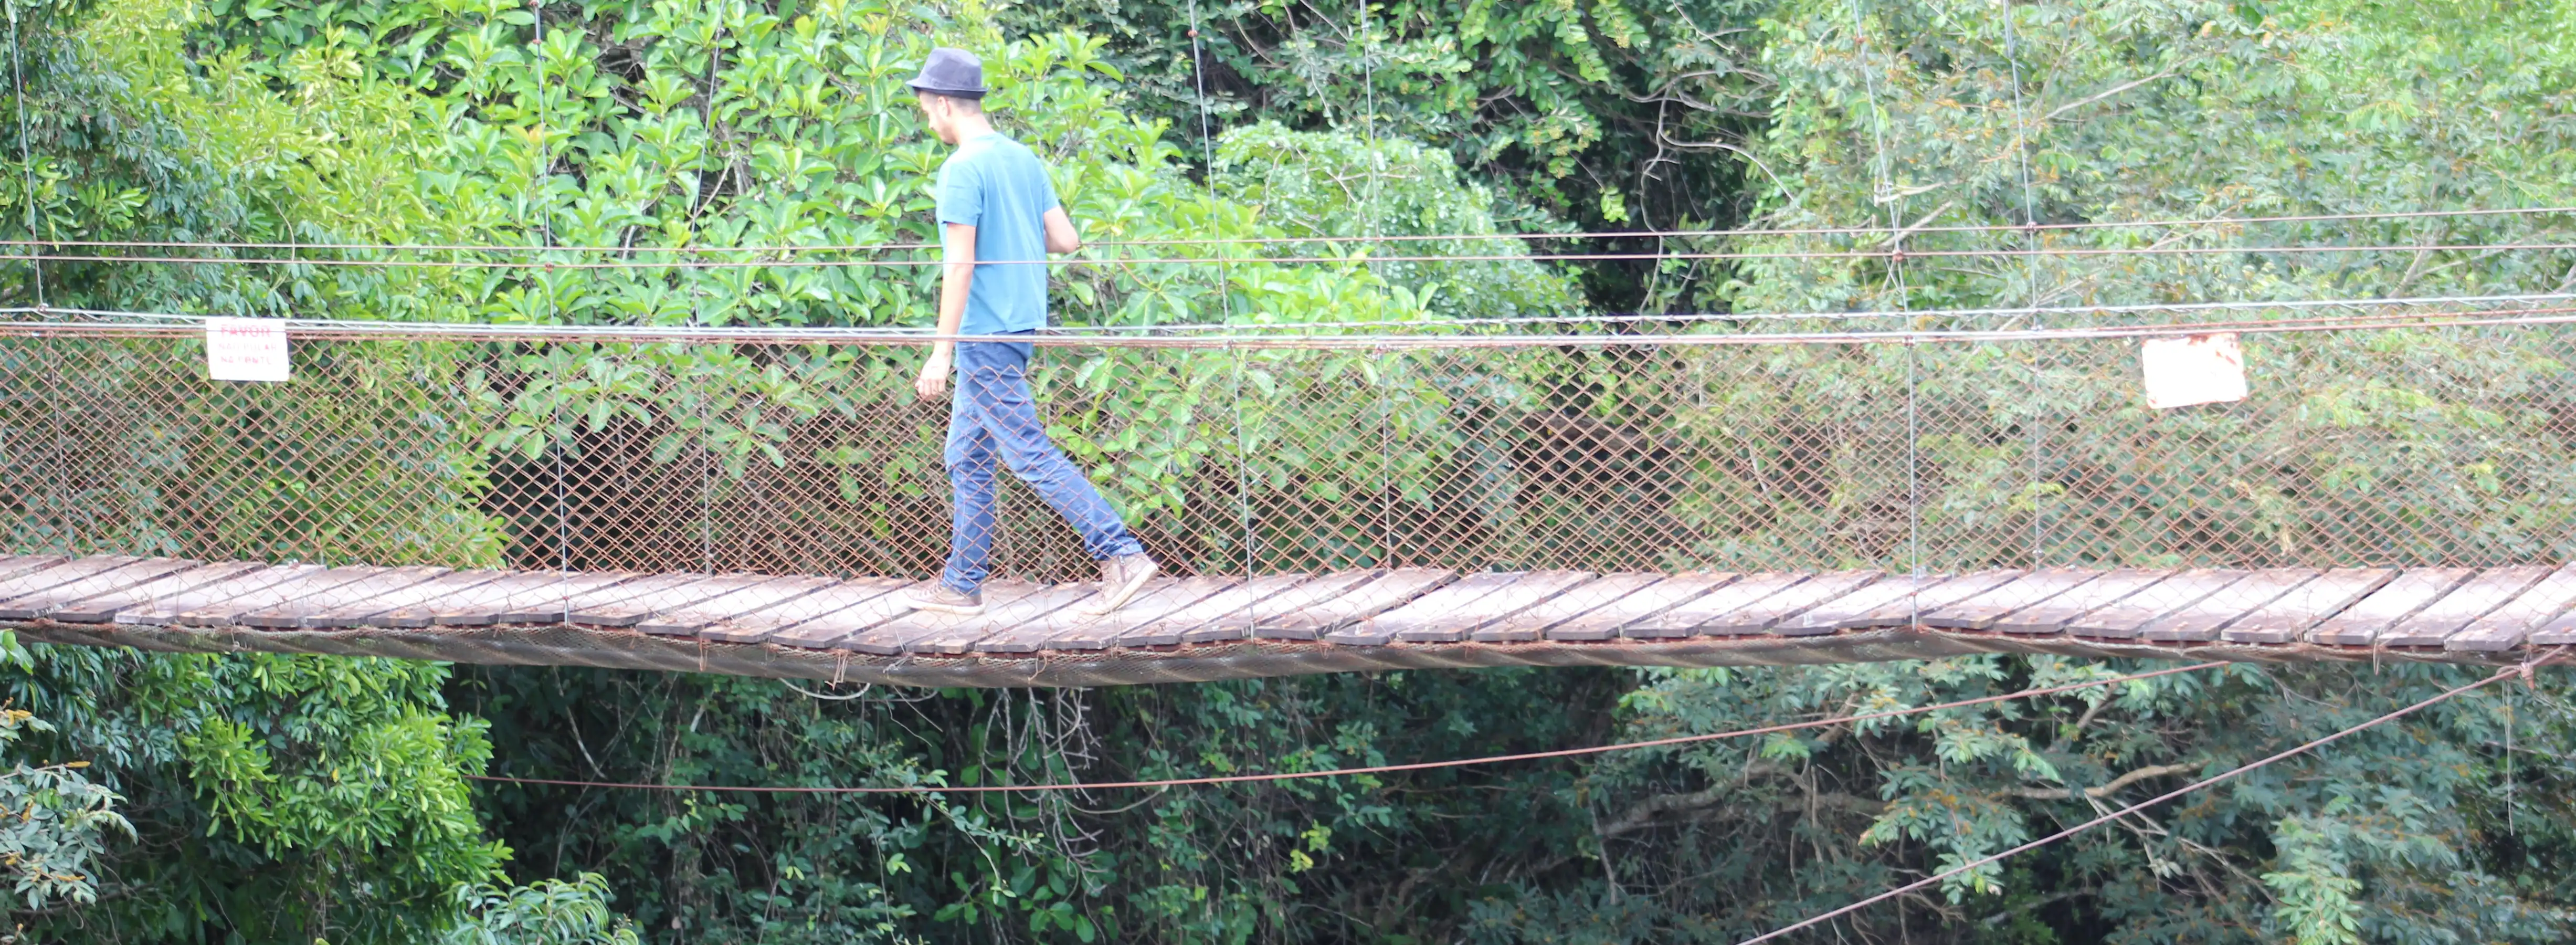 Rafael walking a bridge